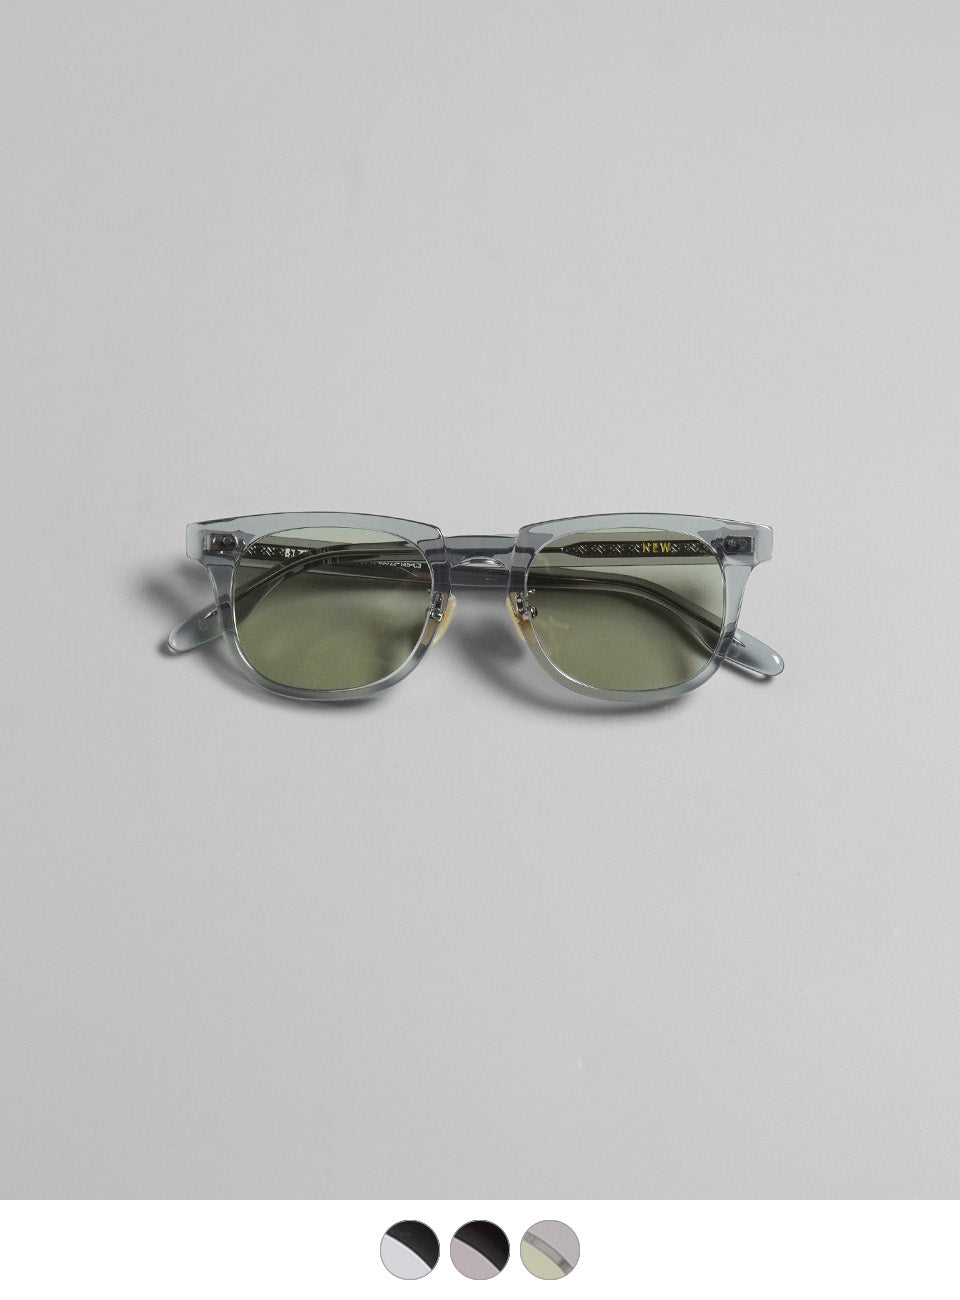 NEW. ニュー ビザール BIZARRE ウェリントン型 サングラス 眼鏡 めがね 伊達メガネ カラーレンズ  【送料無料】【クーポン対象外】